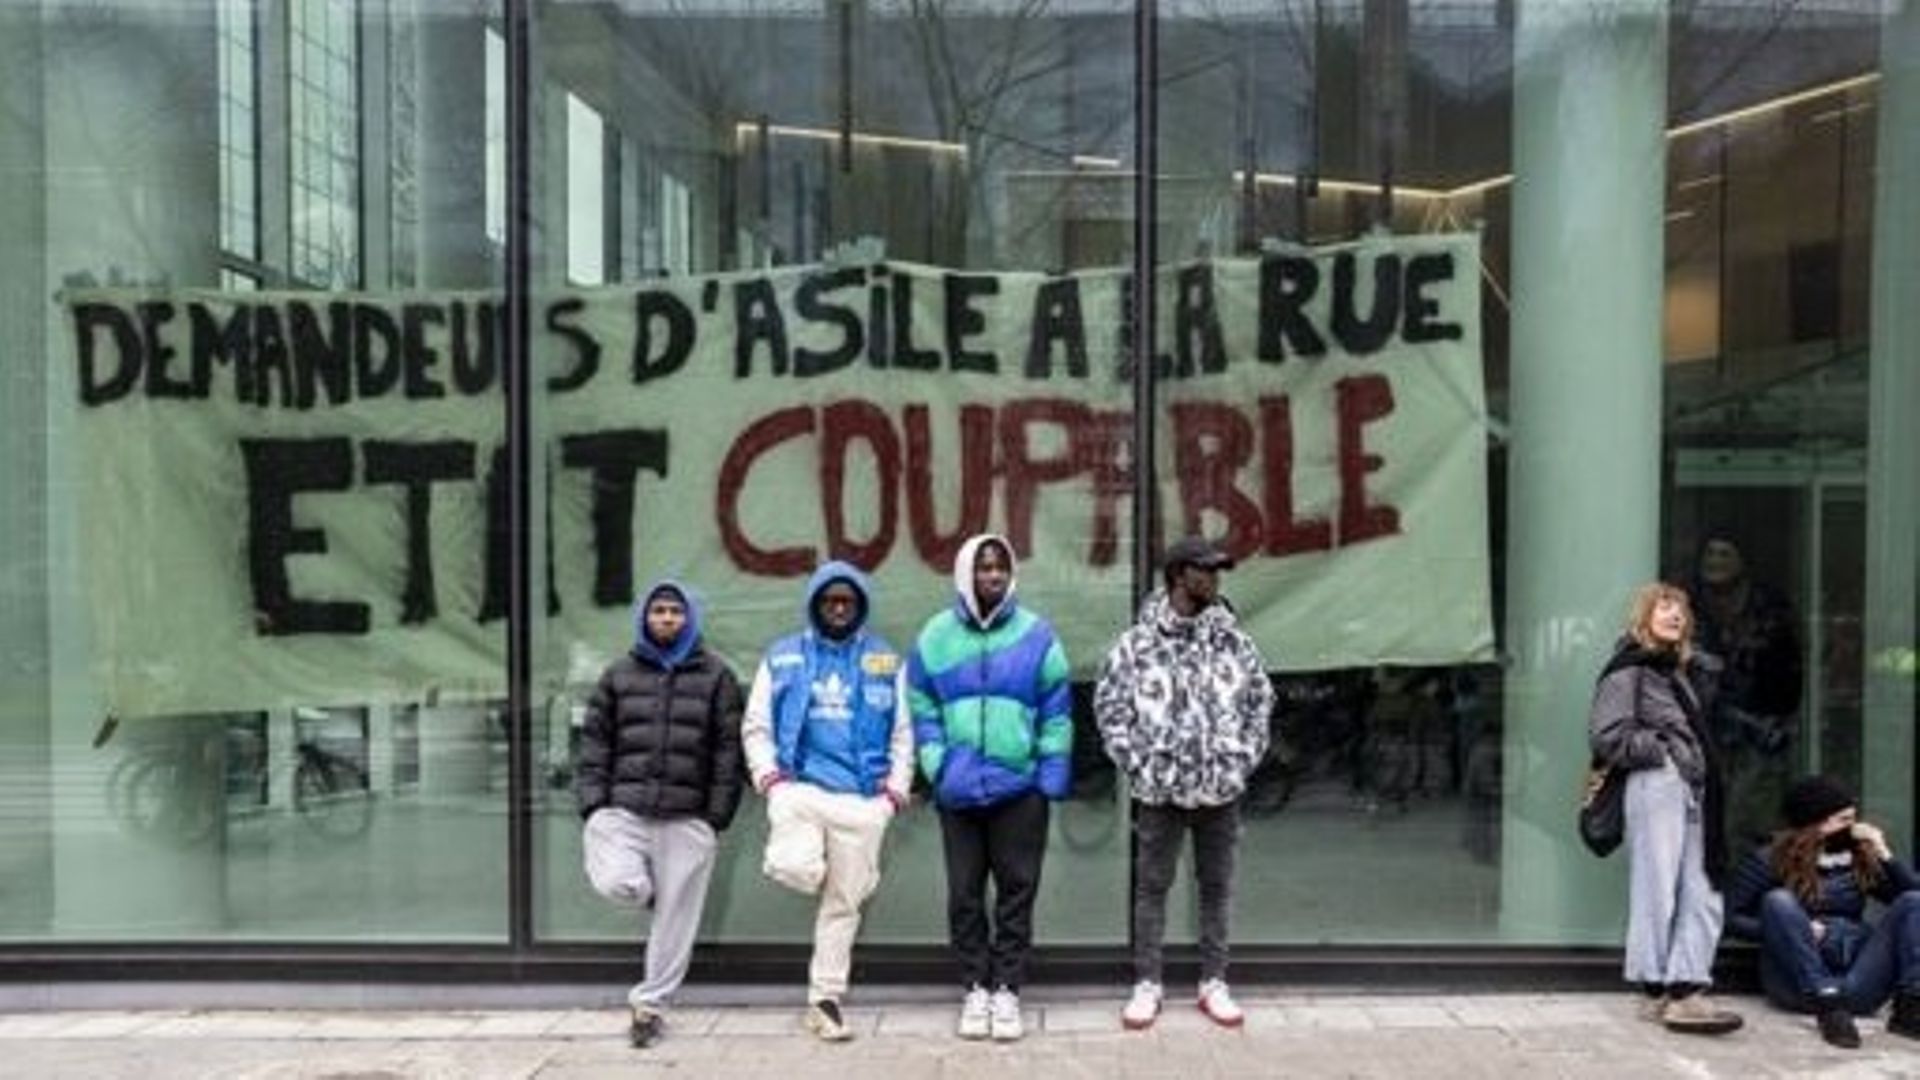 L'illustration montre la réquisition d'un bâtiment public pour offrir un logement solidaire à la cinquantaine de demandeurs d'asile actuellement sans solution de logement (suite aux expulsions du canal et de l'allée du Kaai), à Bruxelles, dimanche 12 mars